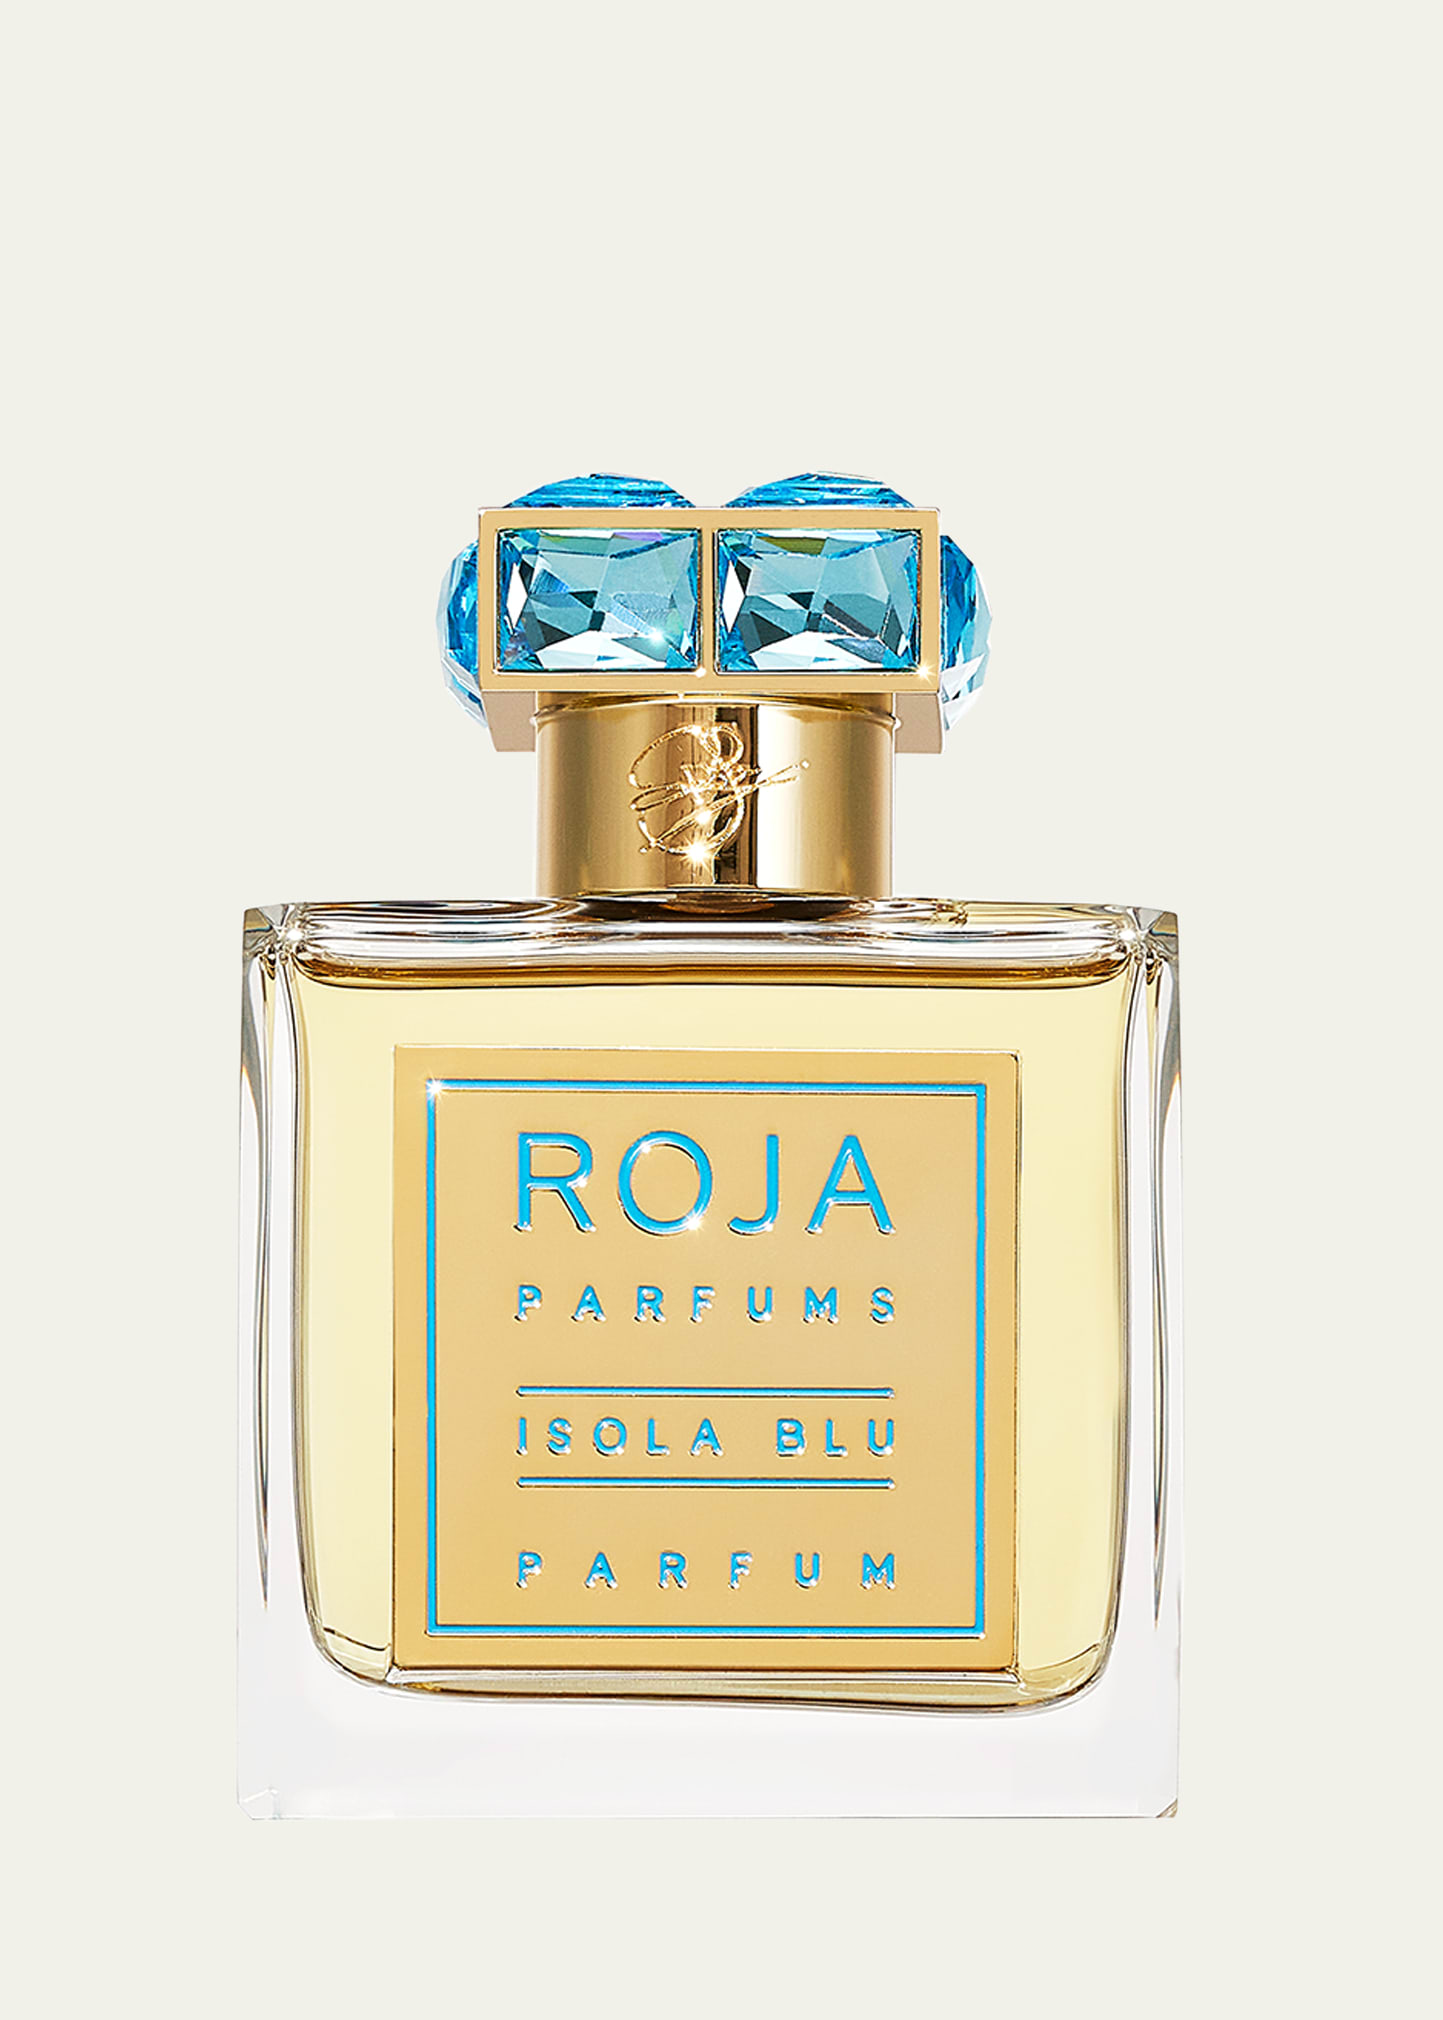 Roja Parfums Isola Blu Parfum, 1.7 Oz.